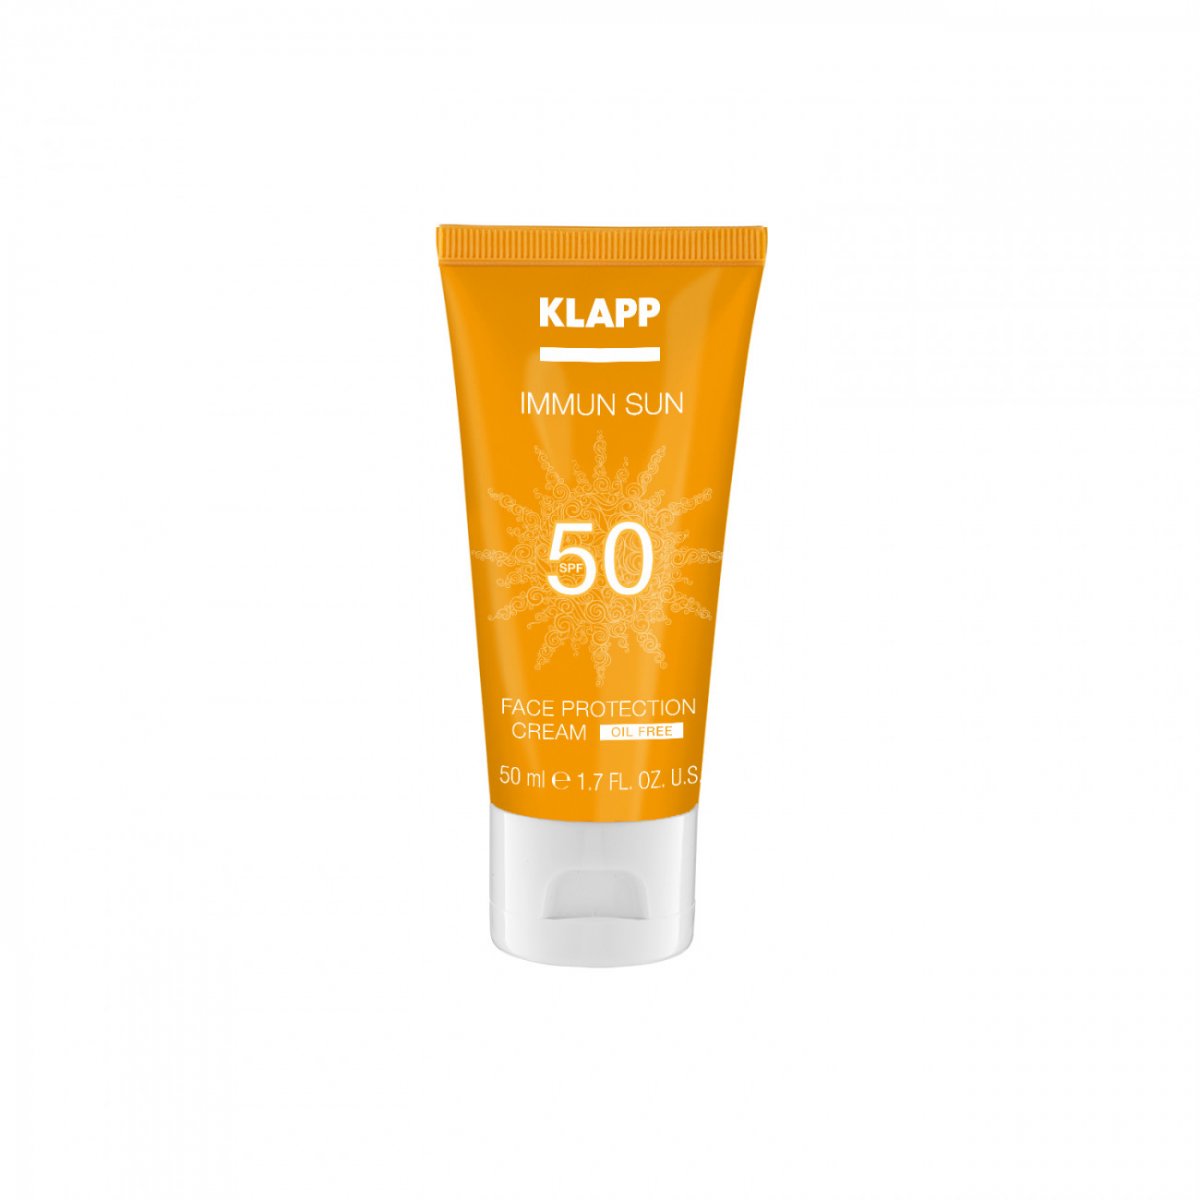 Купить Klapp Immun Sun Face Protection Cream SPF 50 - Солнцезащитный крем для лица SPF50 50 мл, Klapp (Германия)